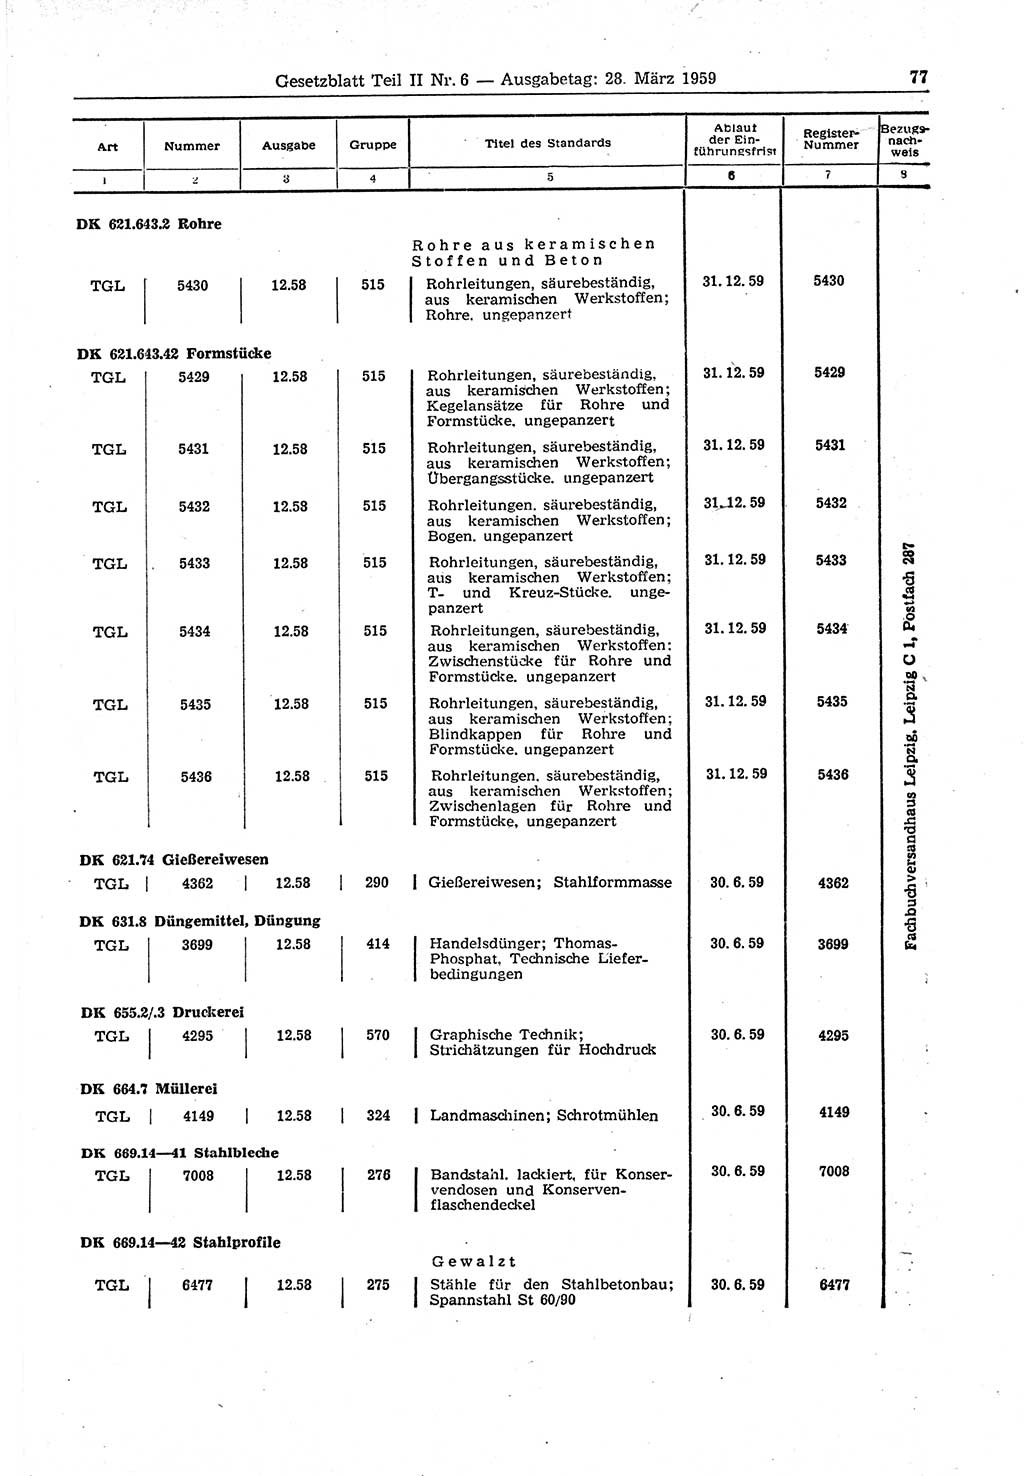 Gesetzblatt (GBl.) der Deutschen Demokratischen Republik (DDR) Teil ⅠⅠ 1959, Seite 77 (GBl. DDR ⅠⅠ 1959, S. 77)